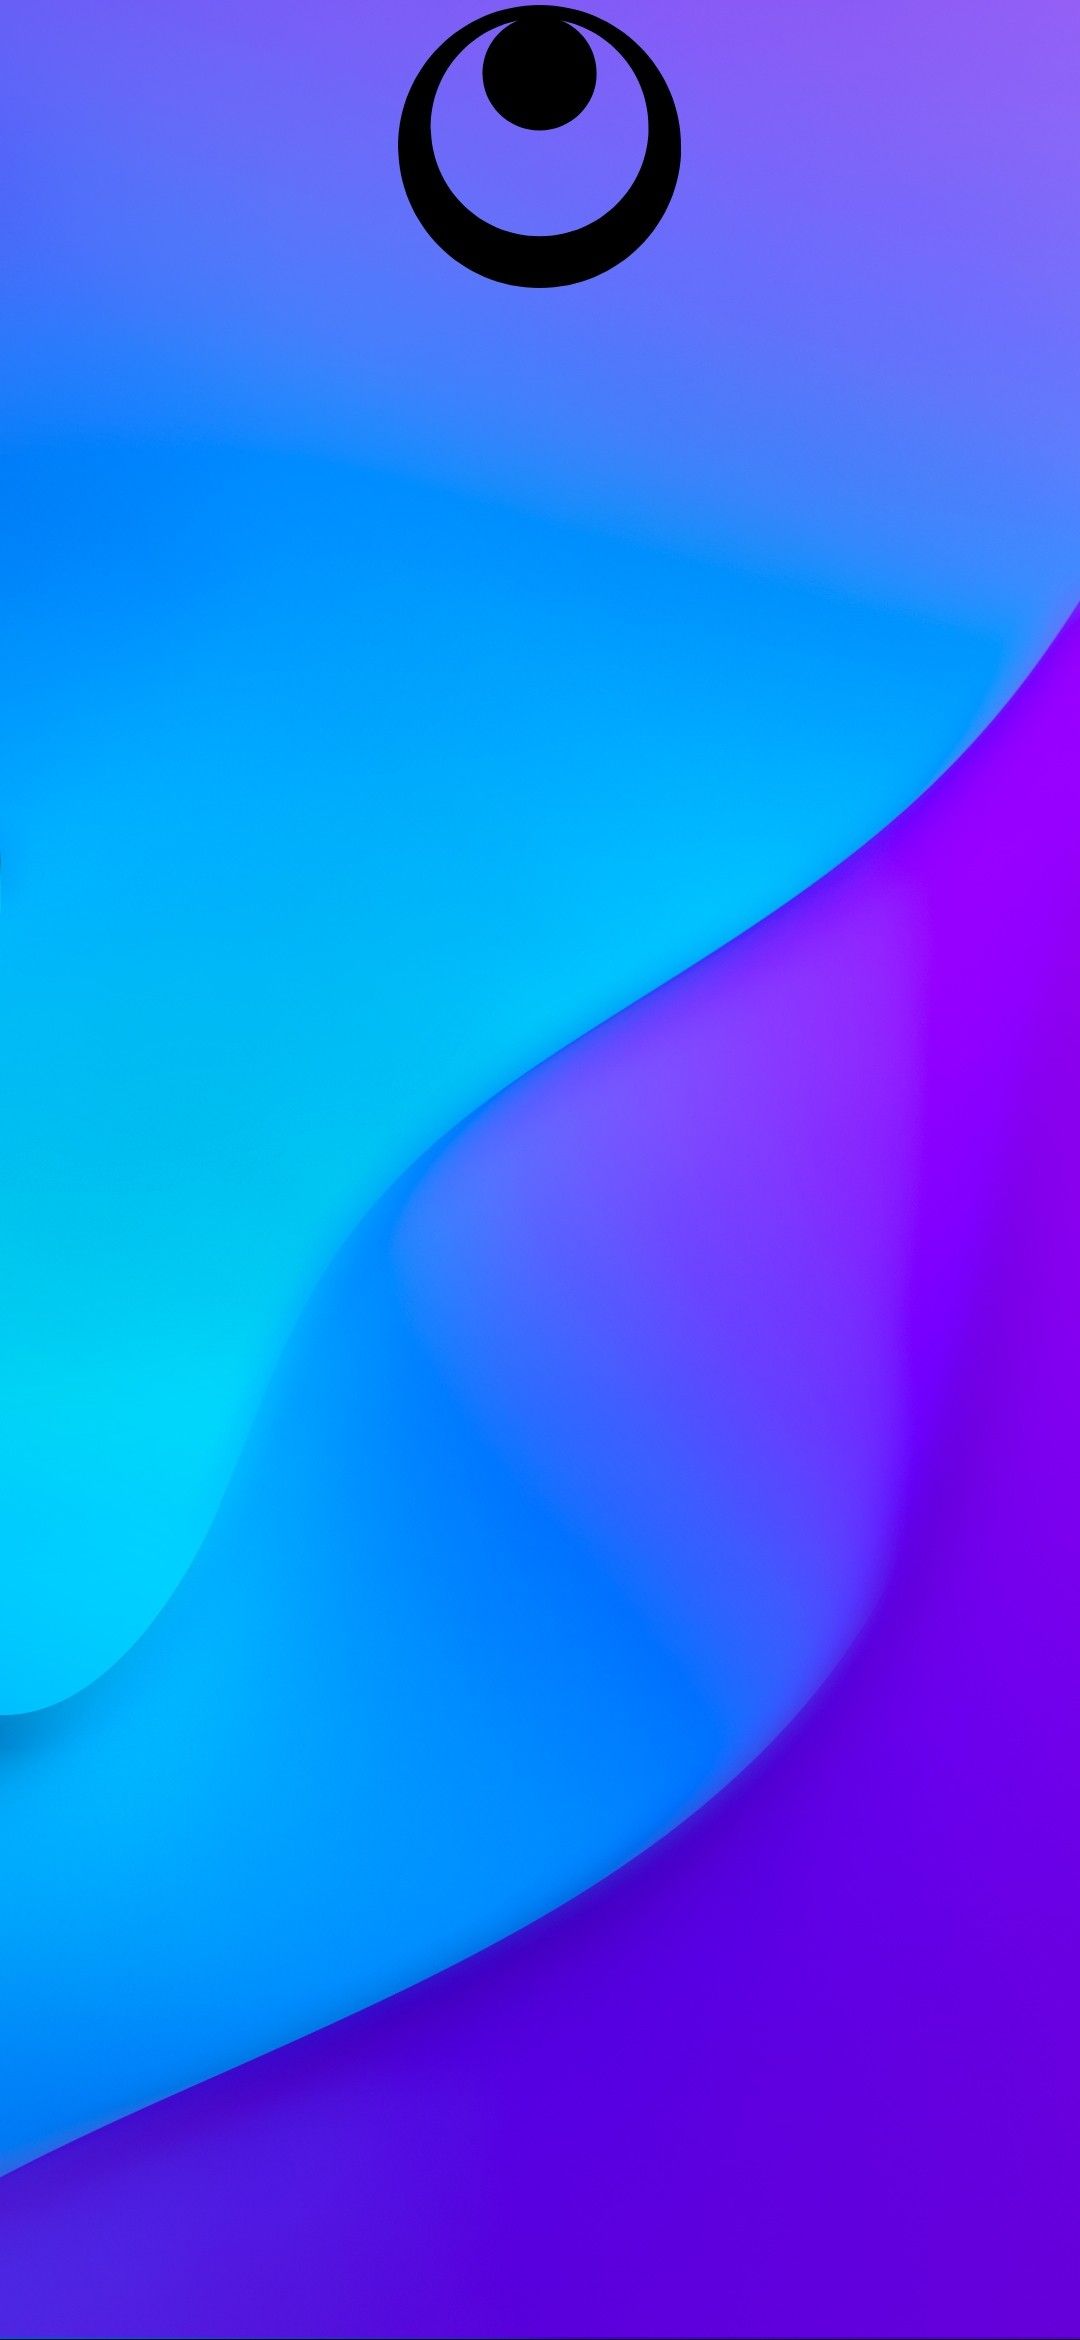 télécharger fond d'écran barcelone untuk hp,bleu,violet,violet,aqua,bleu cobalt